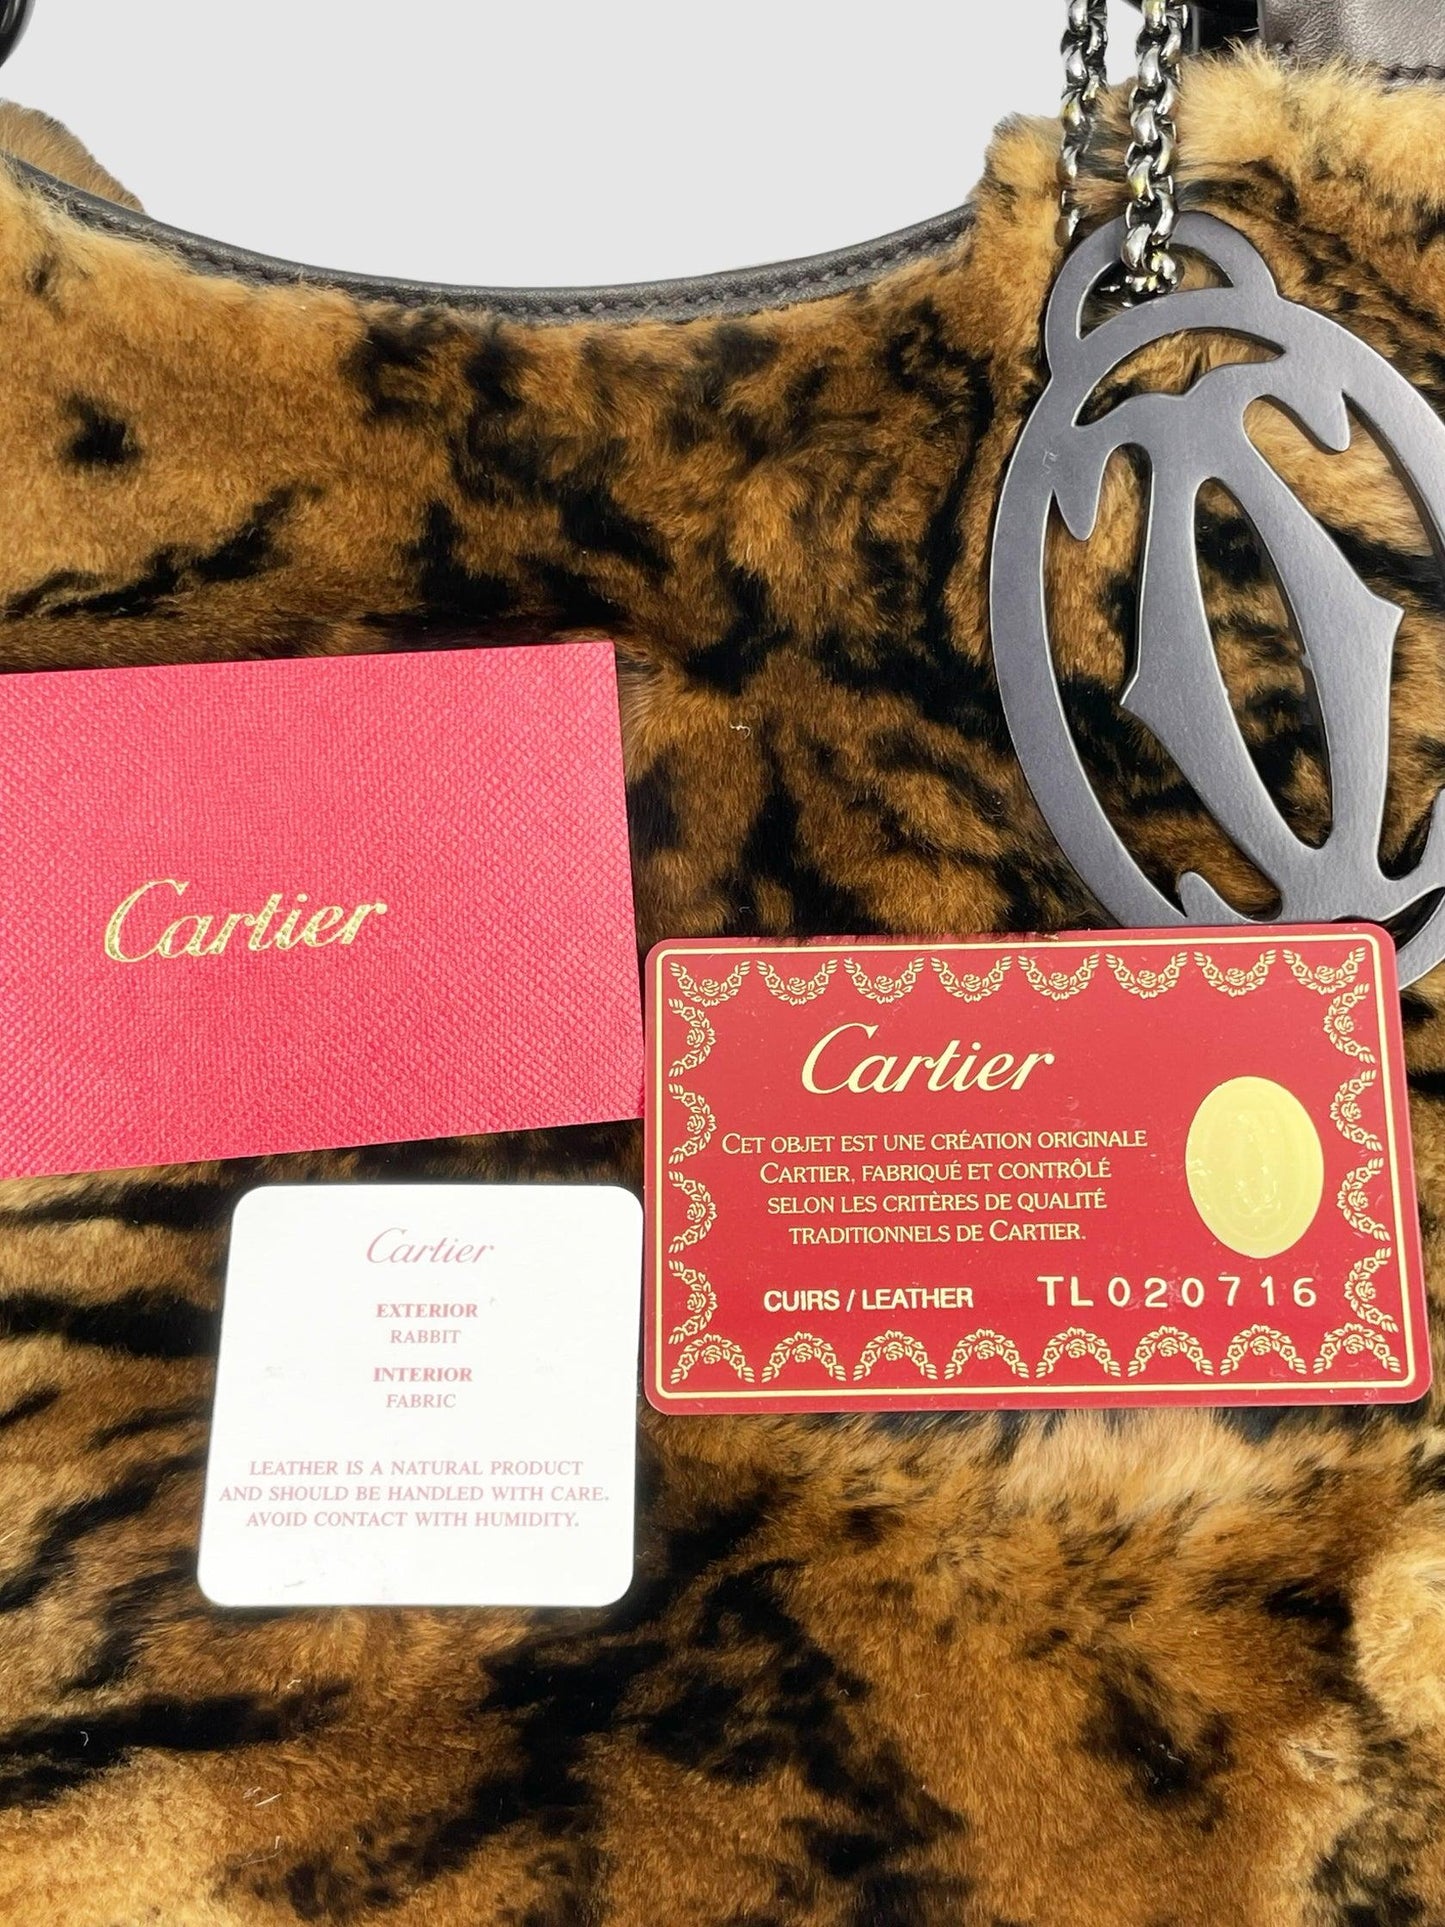 Cartier - Second Nature Boutique